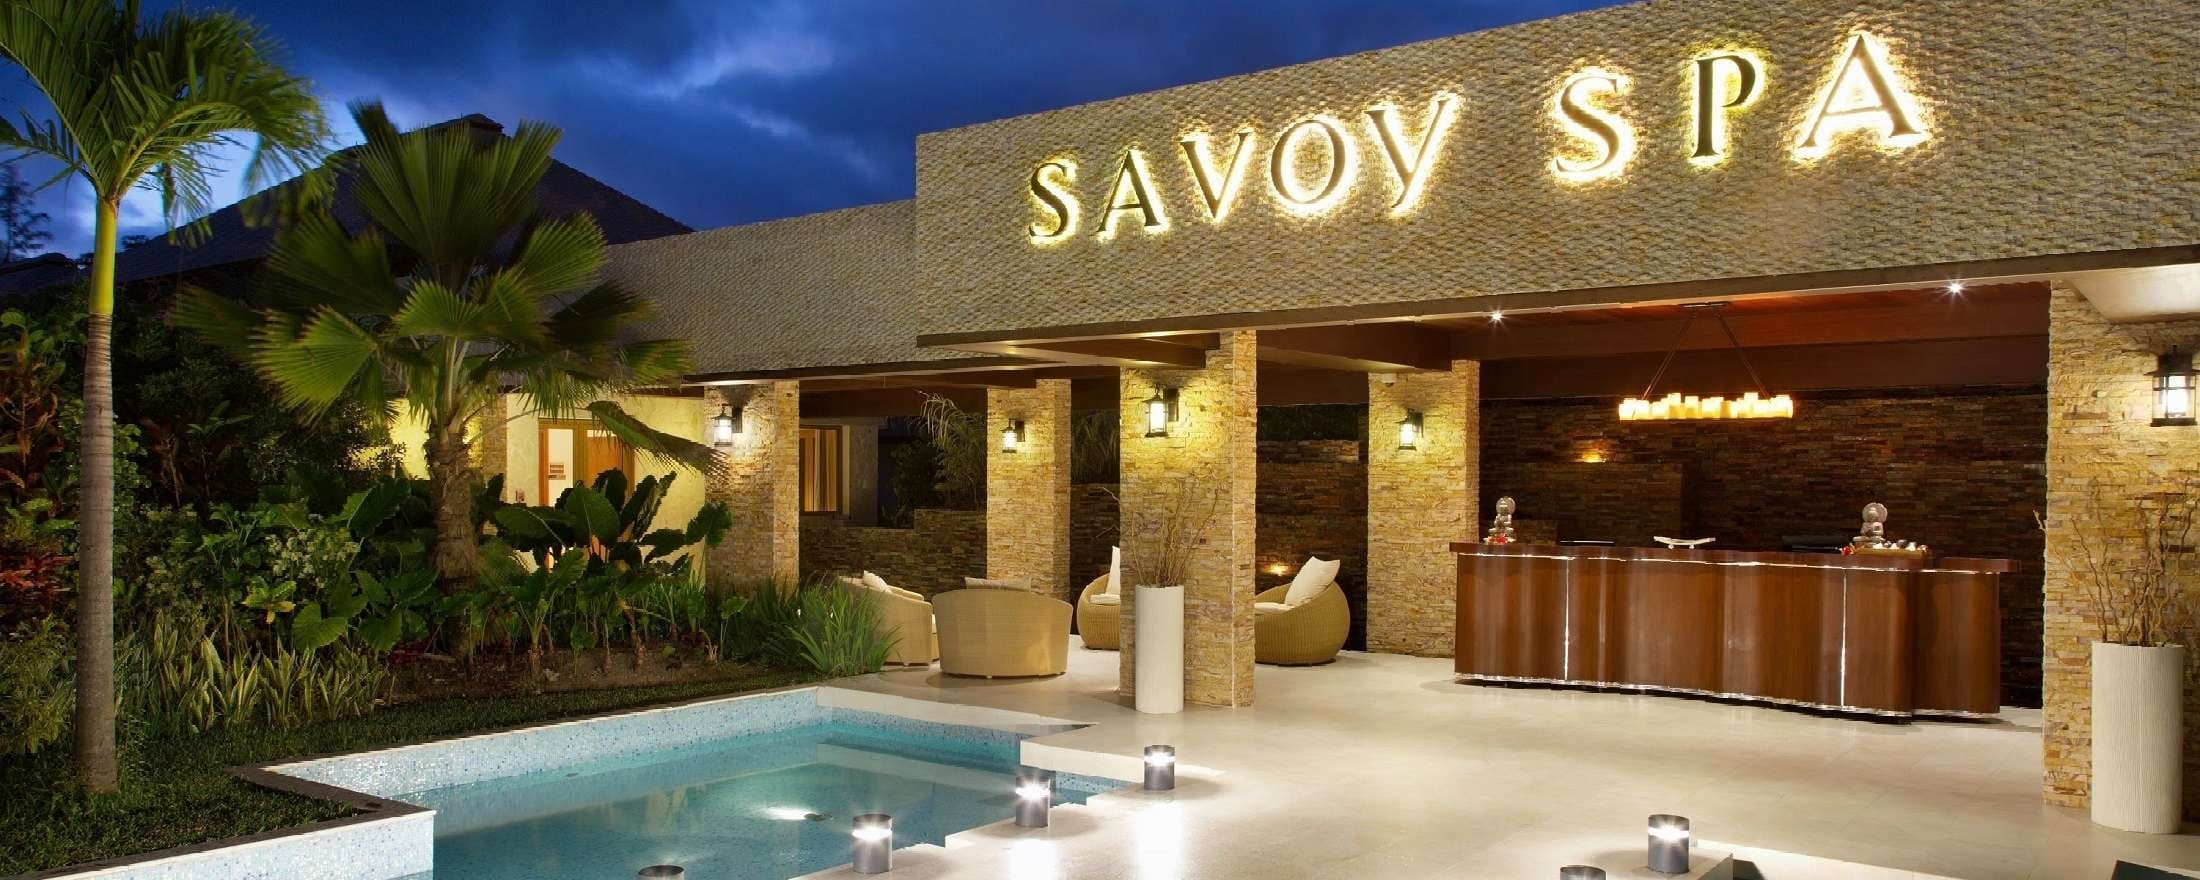 Savoy Spa (Savoy Seychelles Resort & Spa)